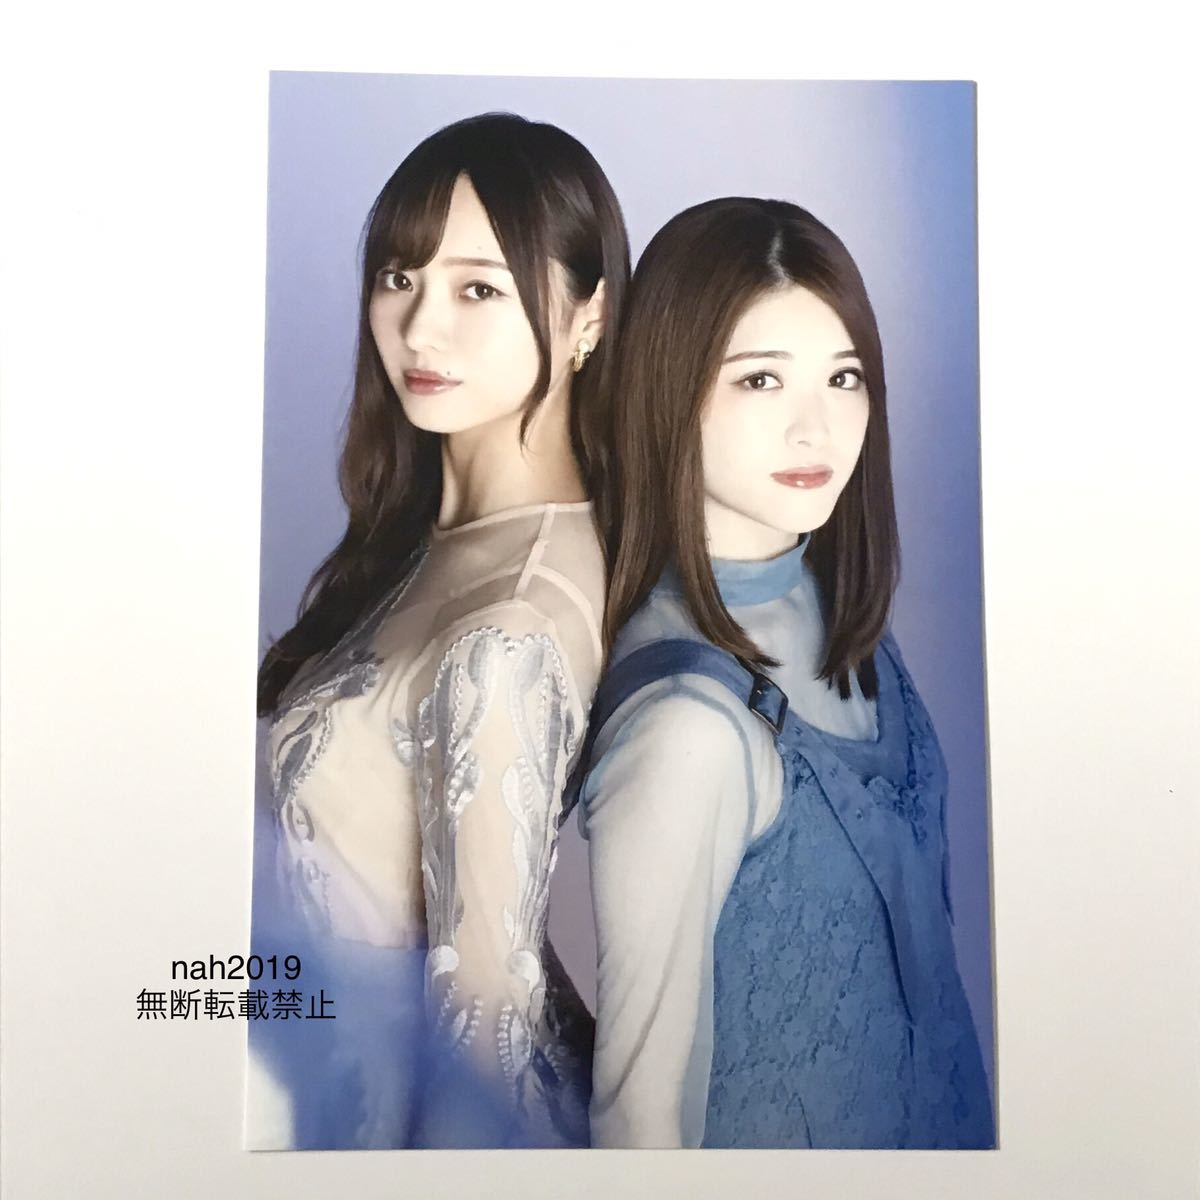 Nogizaka46 بطاقة بريدية Minami Umezawa Sayuri Matsumura السلع الرسمية 1 قطعة 2020 ليست للبيع (التقويم الطبعة الأولى مكافأة نمط الصورة, لا صف, ل, نوجيزاكا46